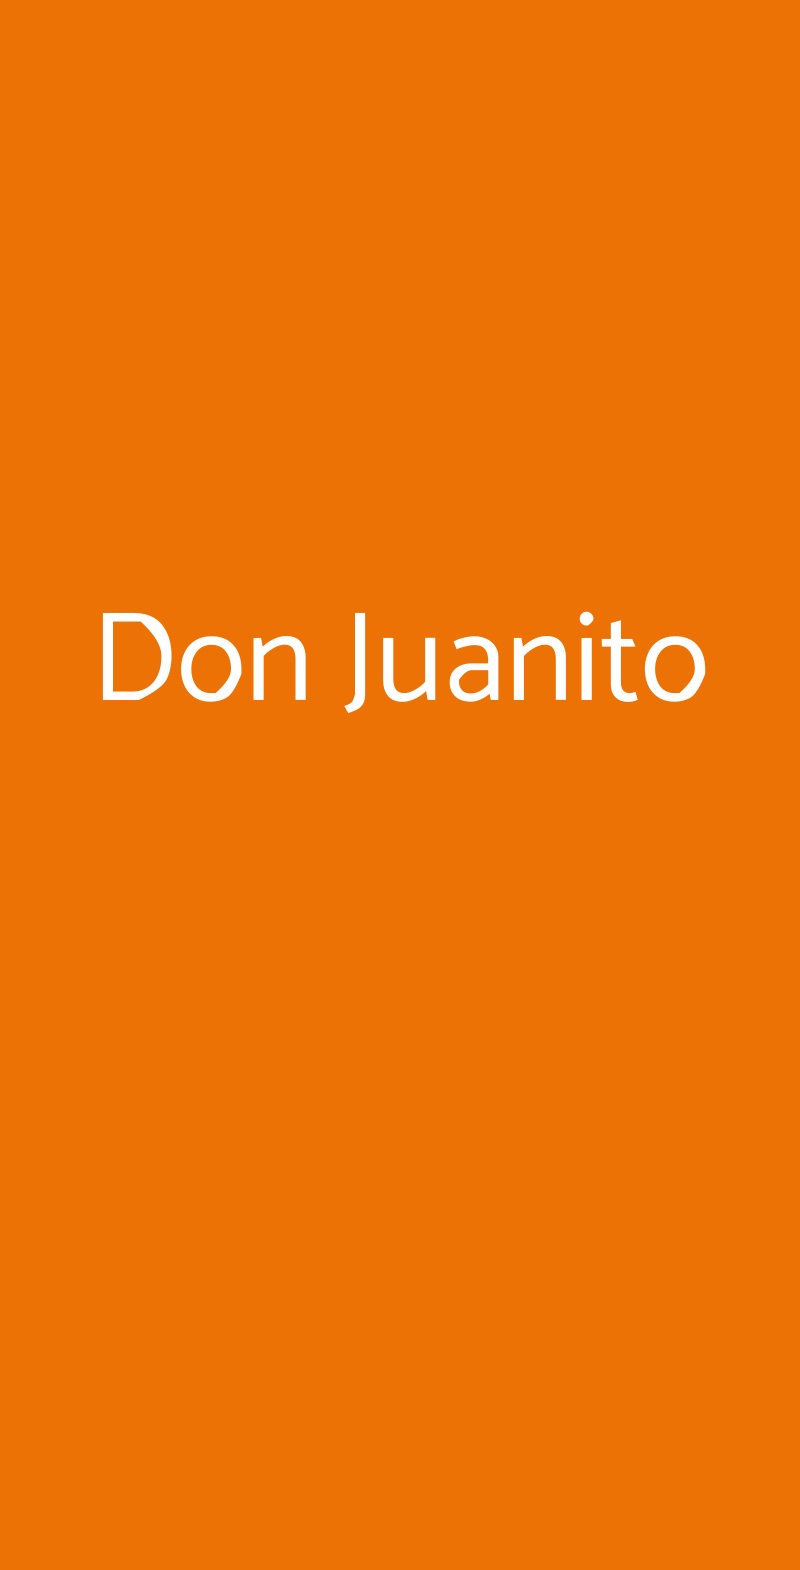 Don Juanito Milano menù 1 pagina